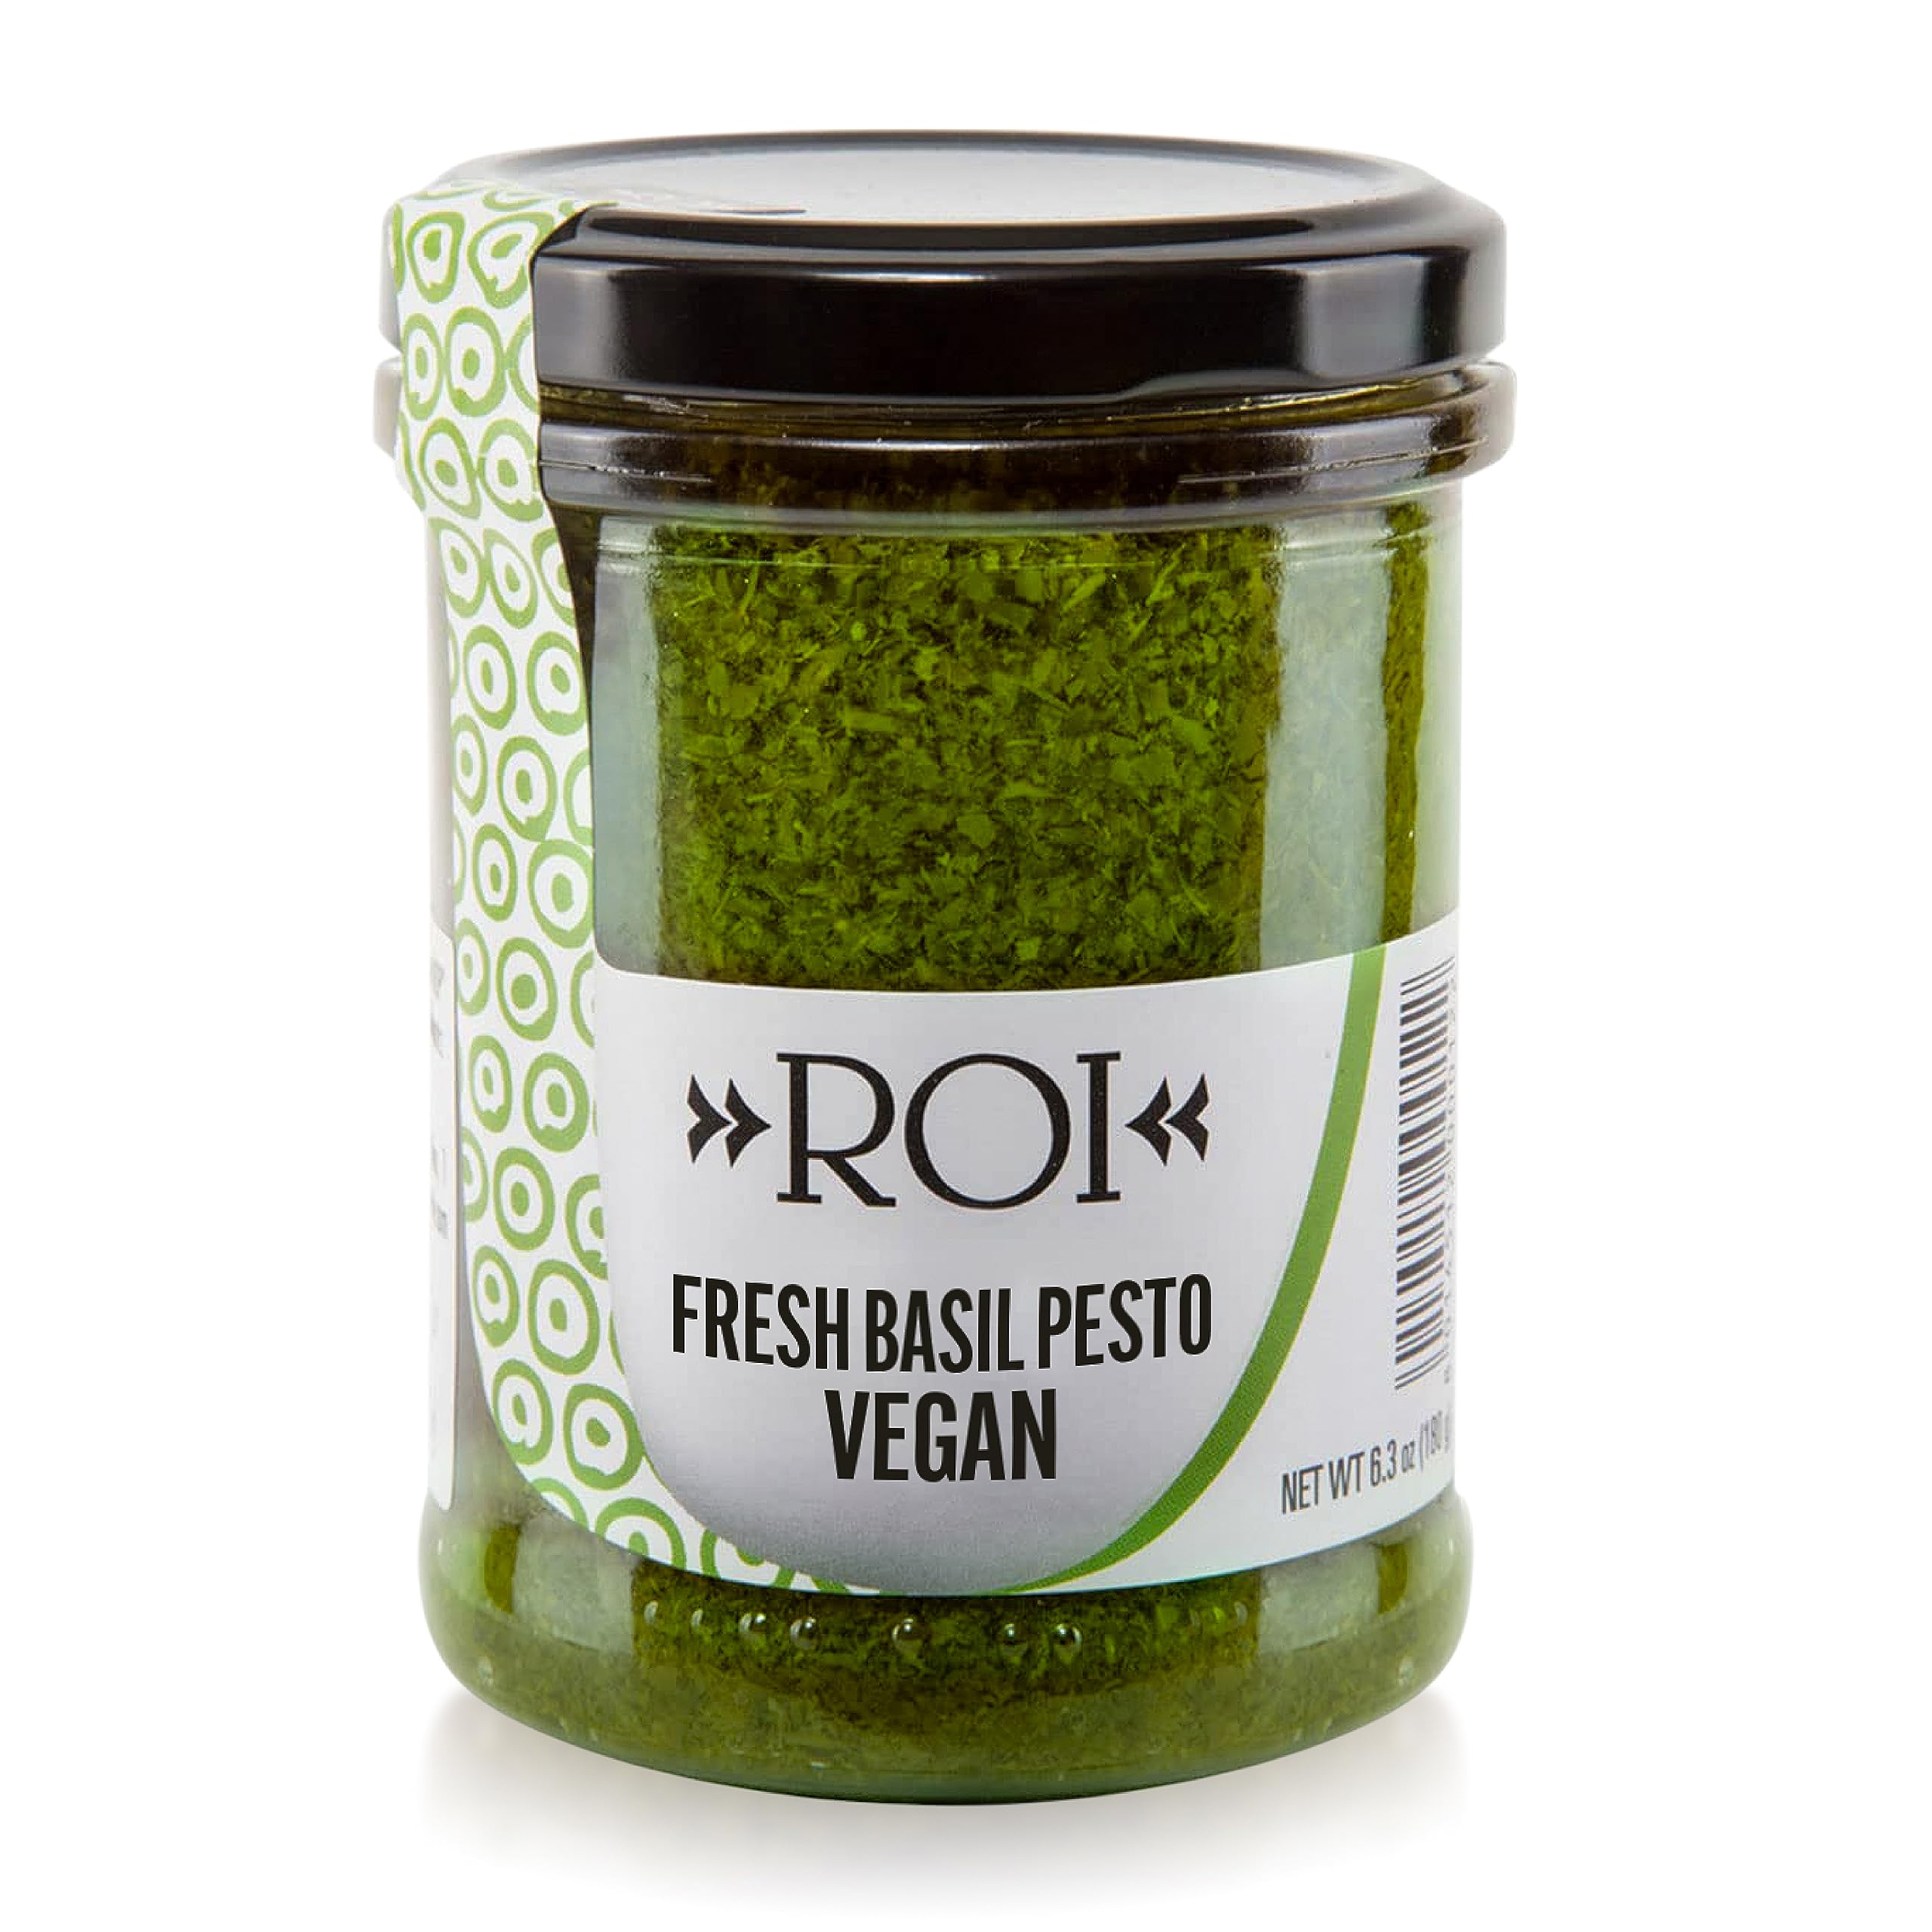 ROI's Vegan Basil Pesto